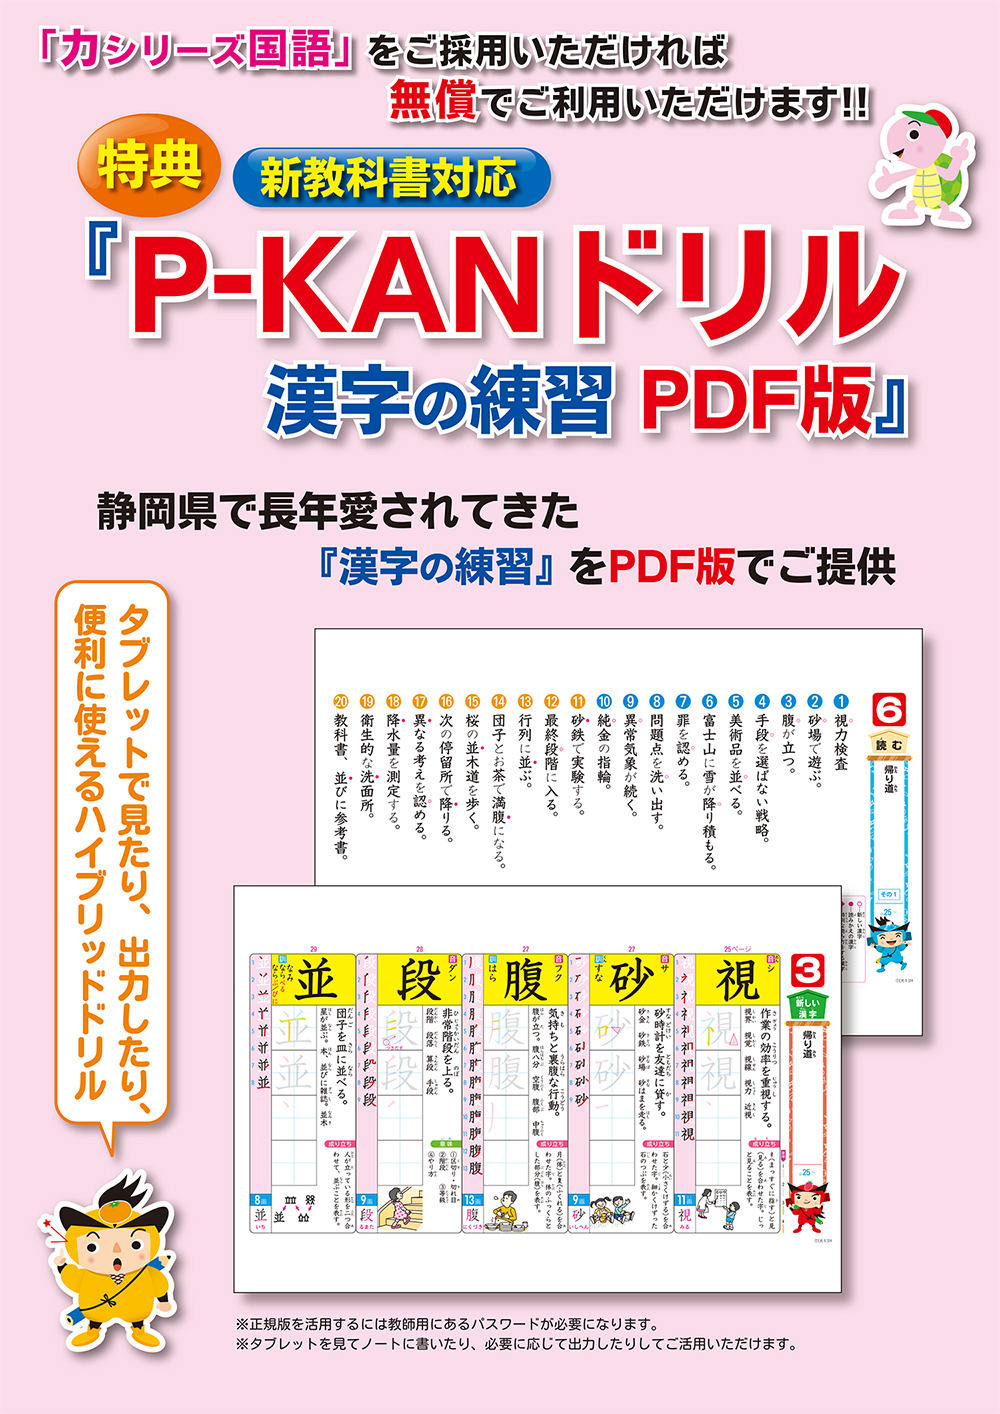 「P-KAN」ドリル紹介